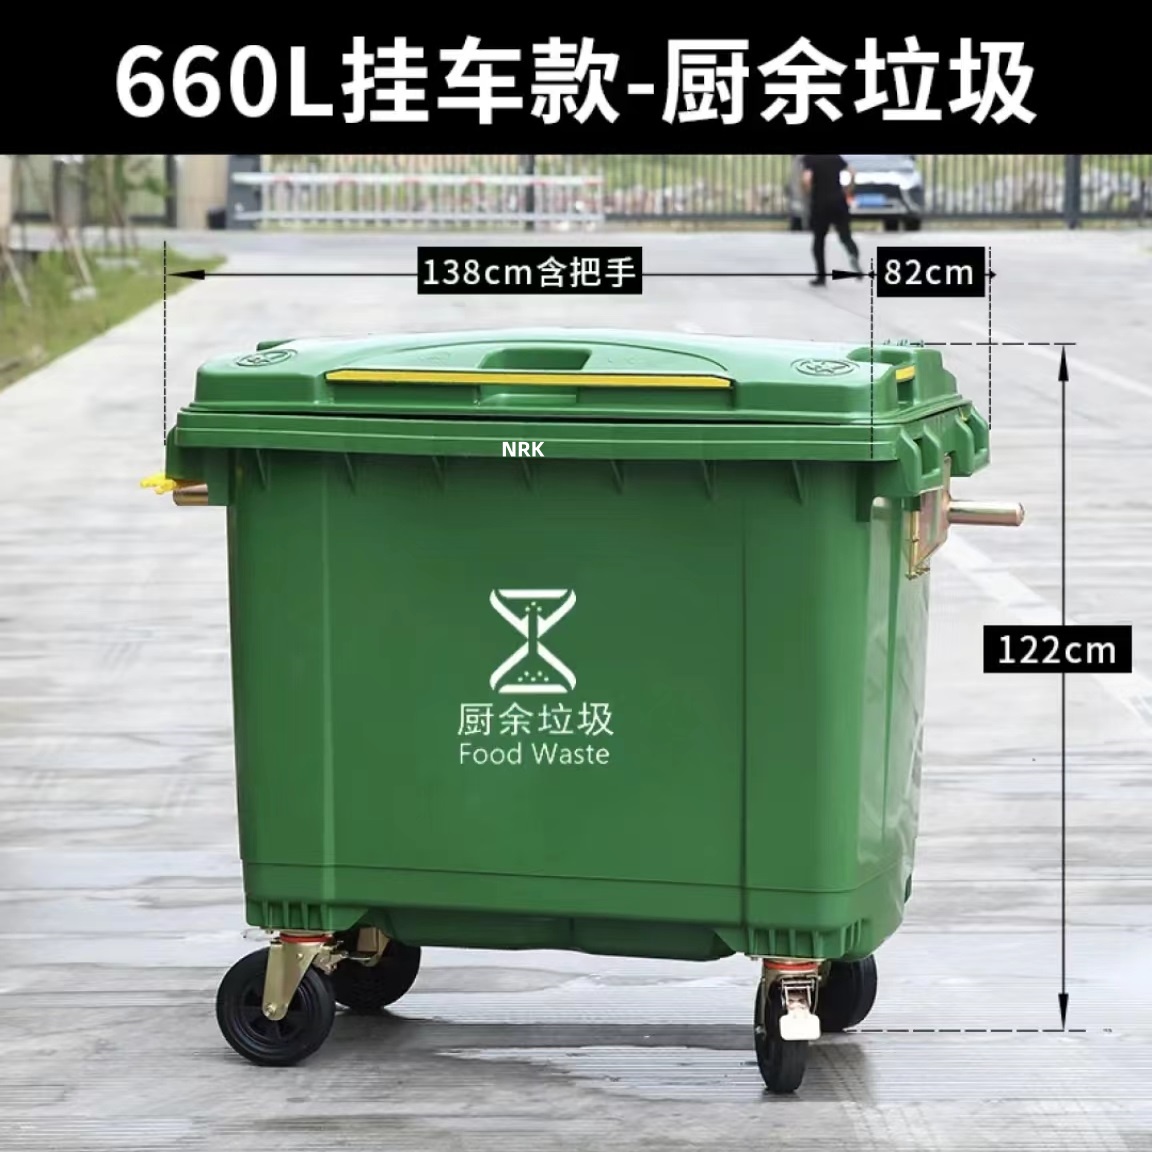 成都660升塑料垃圾桶廠家